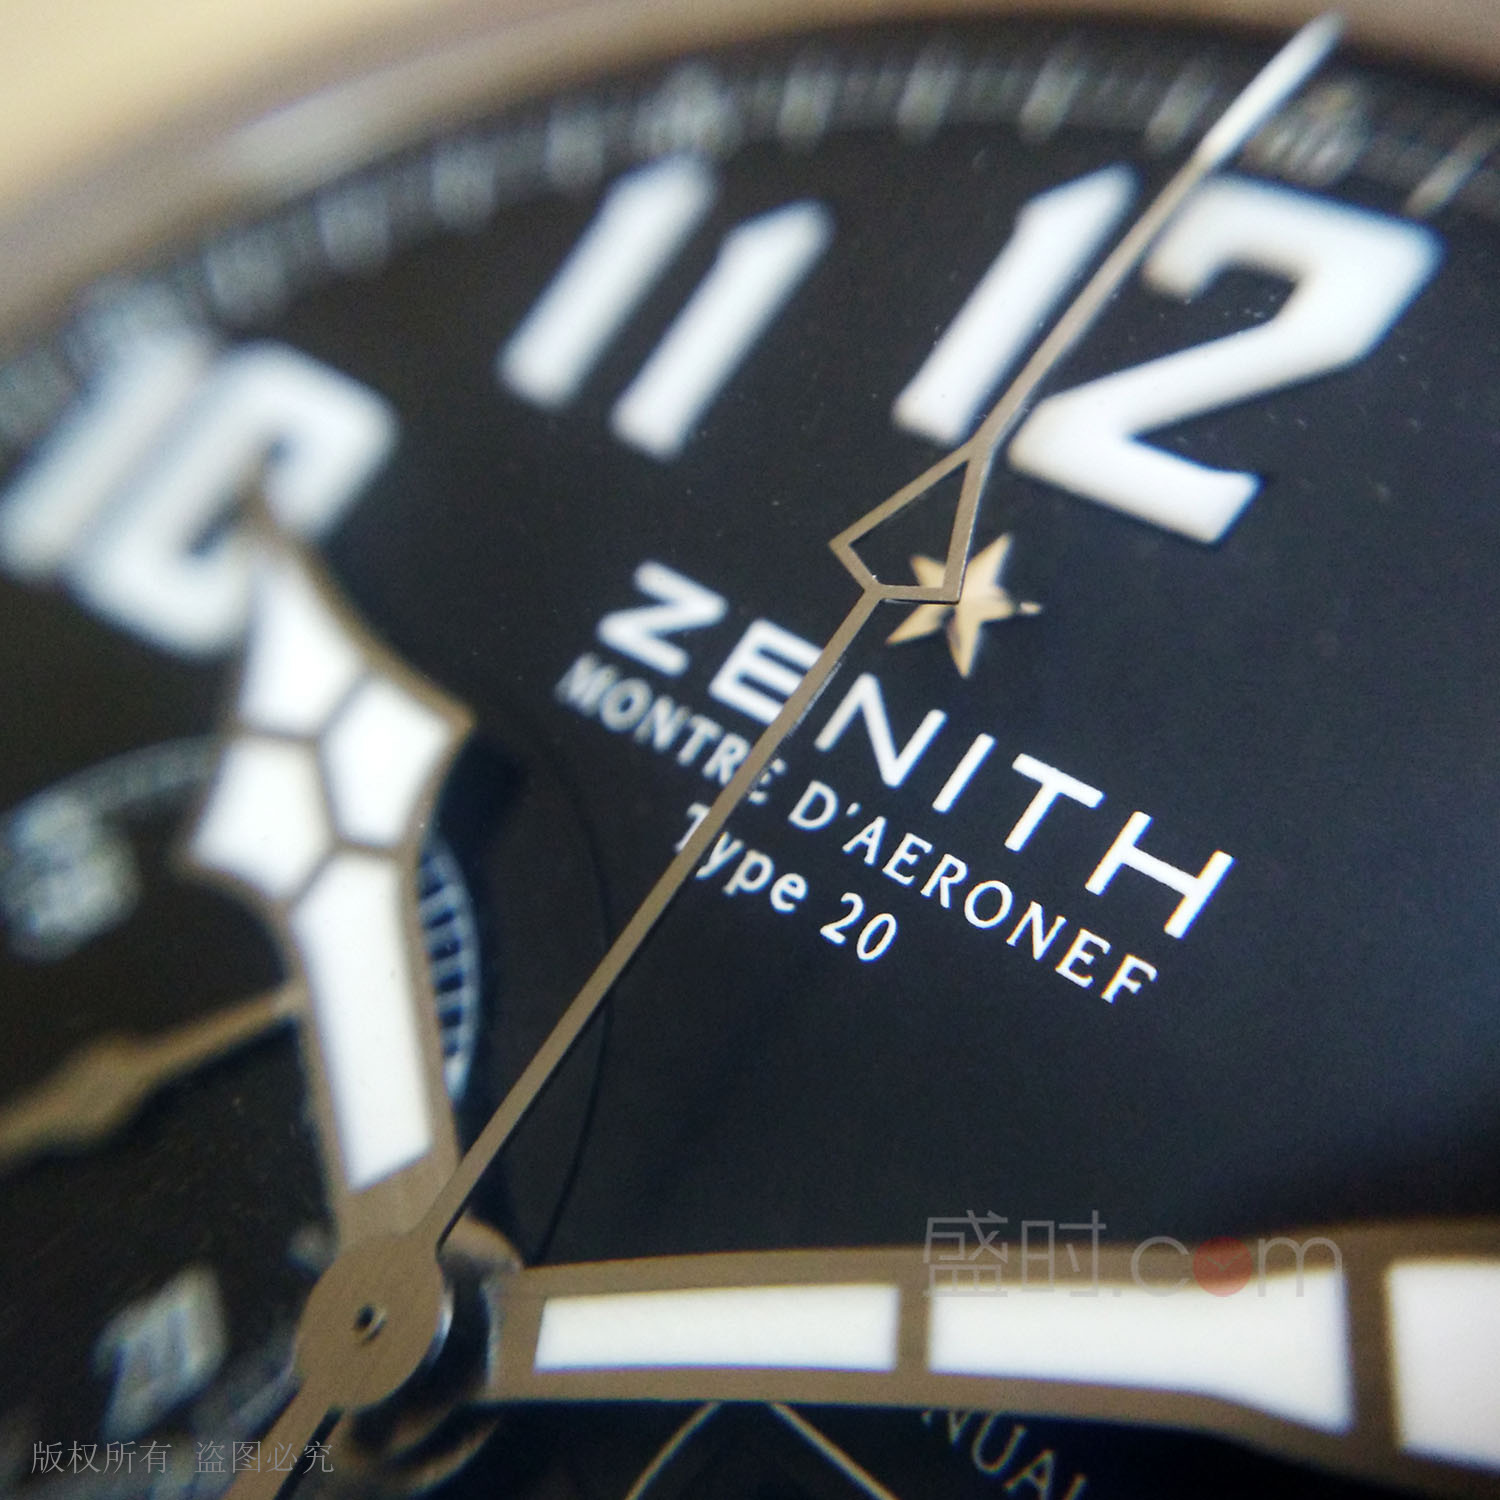 真力时 Zenith PILOT 飞行员系列 03.2430.4054/21.C721 机械 男款